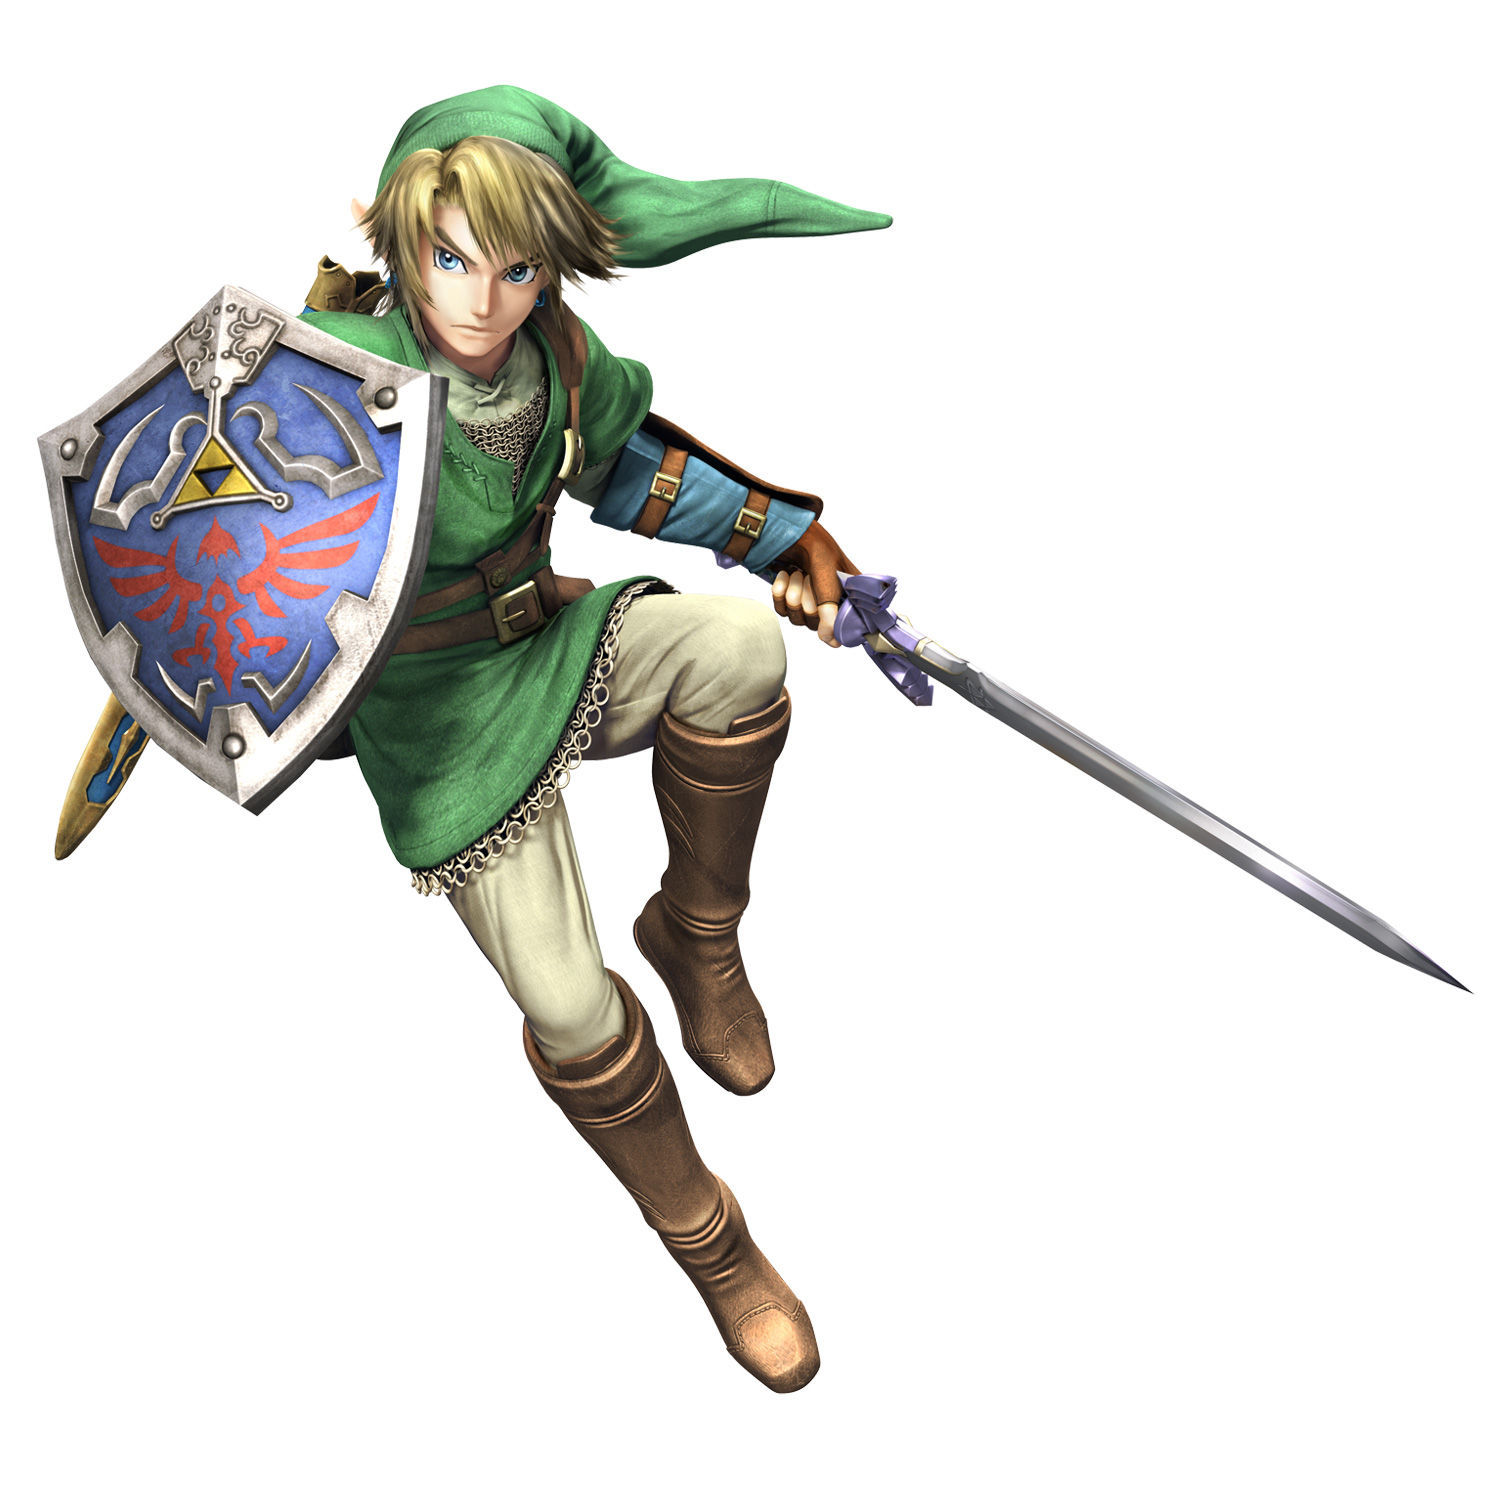 ¿Que acompañante de Link reside en la espada maestra?